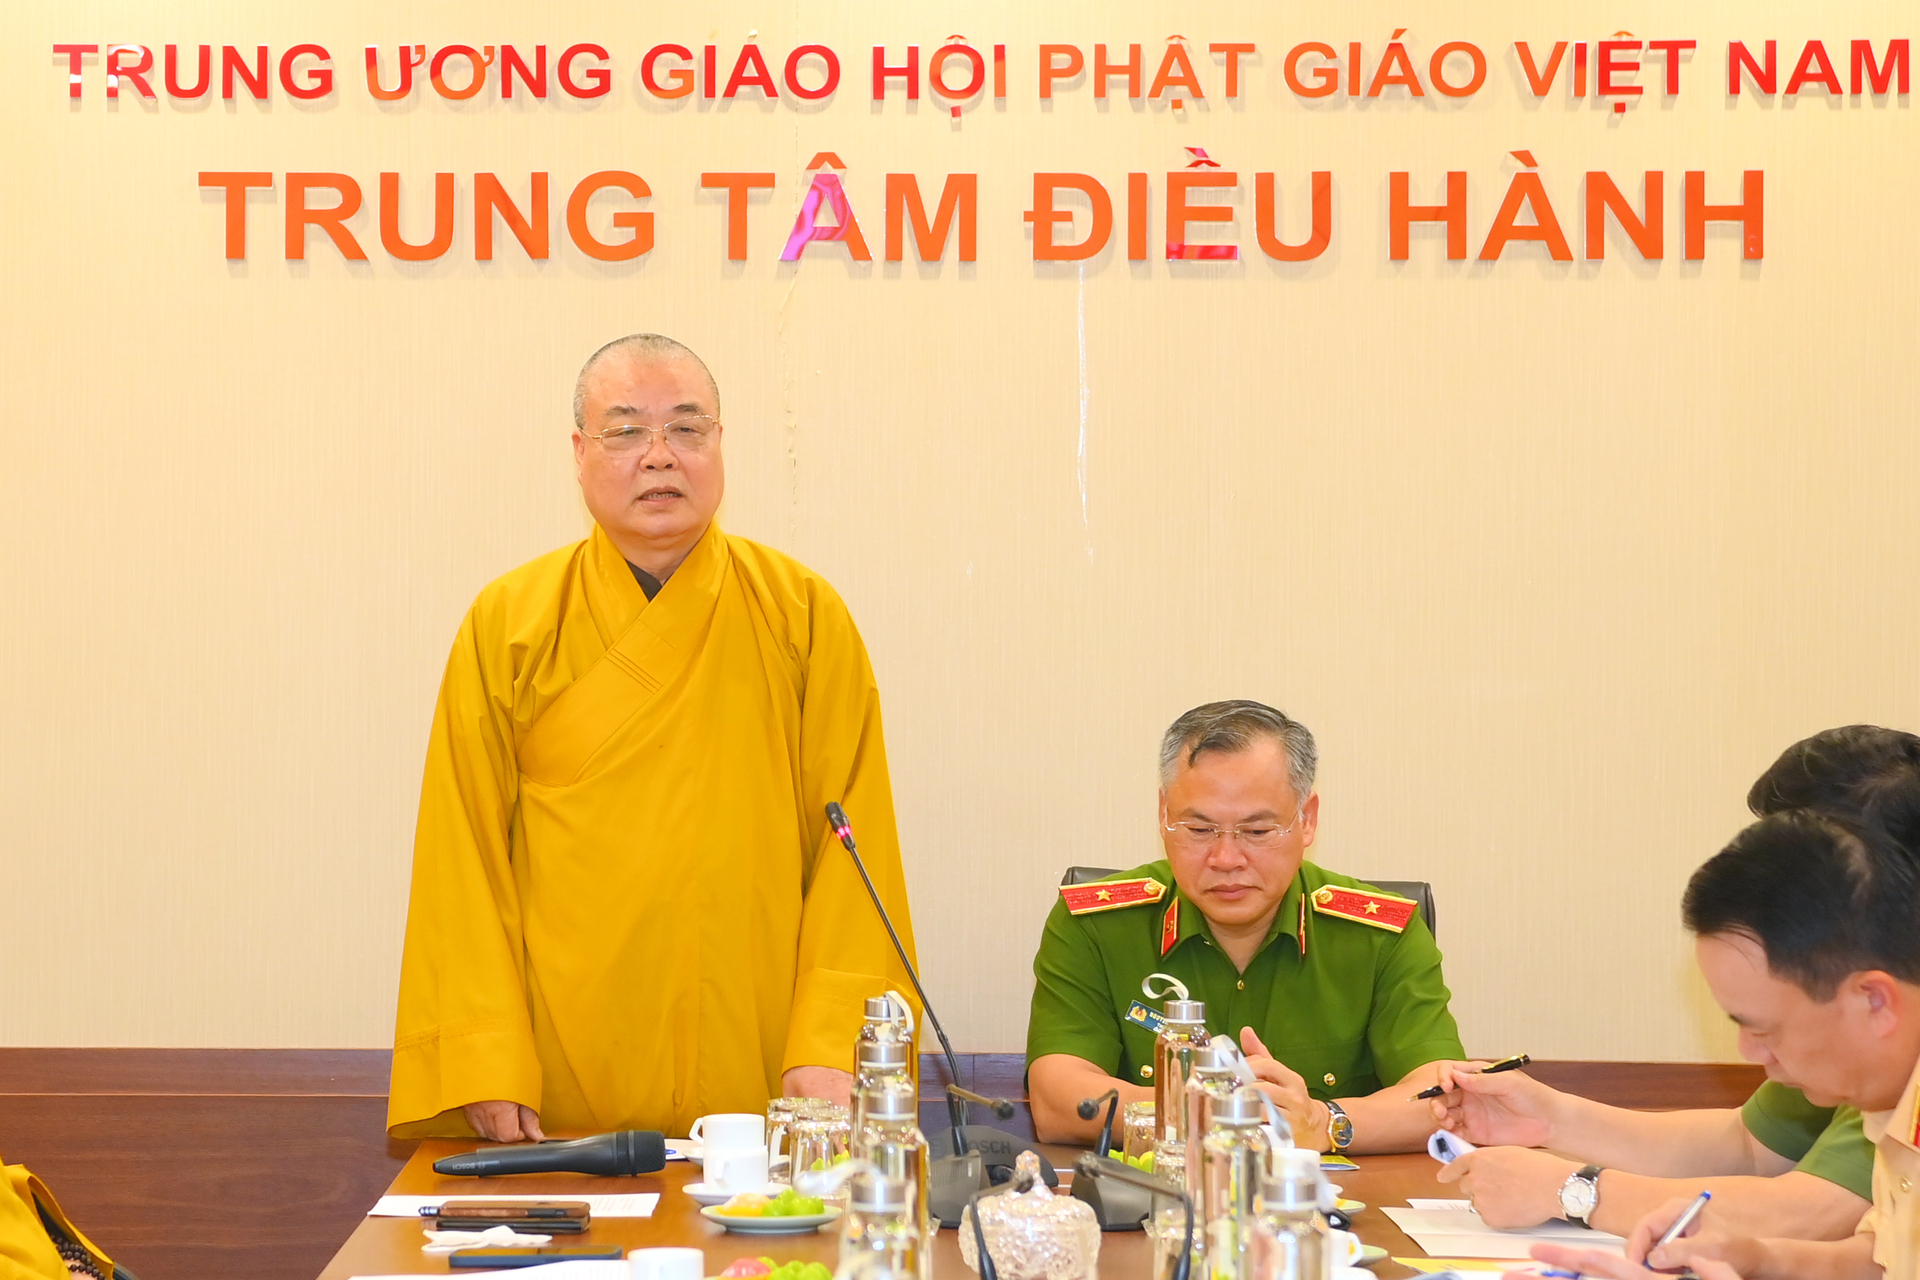 Hoà thượng Thích Thanh Nhiễu - Phó Chủ tịch Thường trực Hội đồng trị sự GHPG Việt Nam